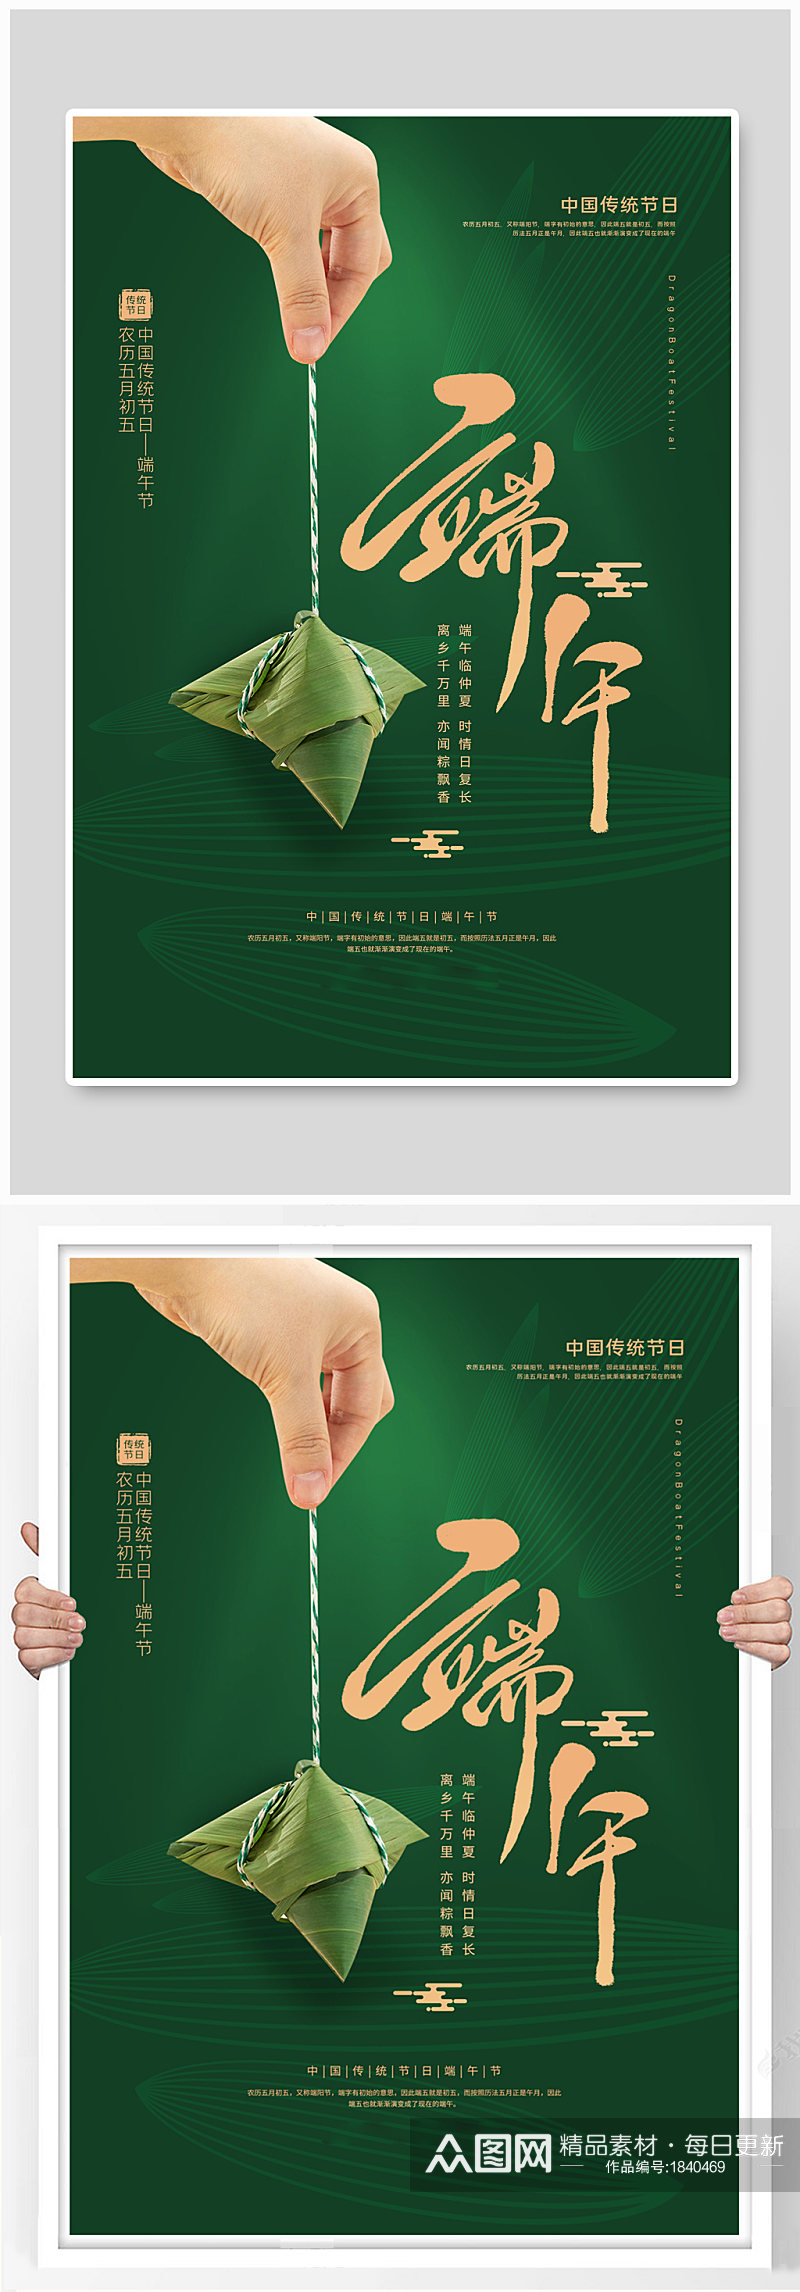 绿色创意端午节海报图片大全大图素材